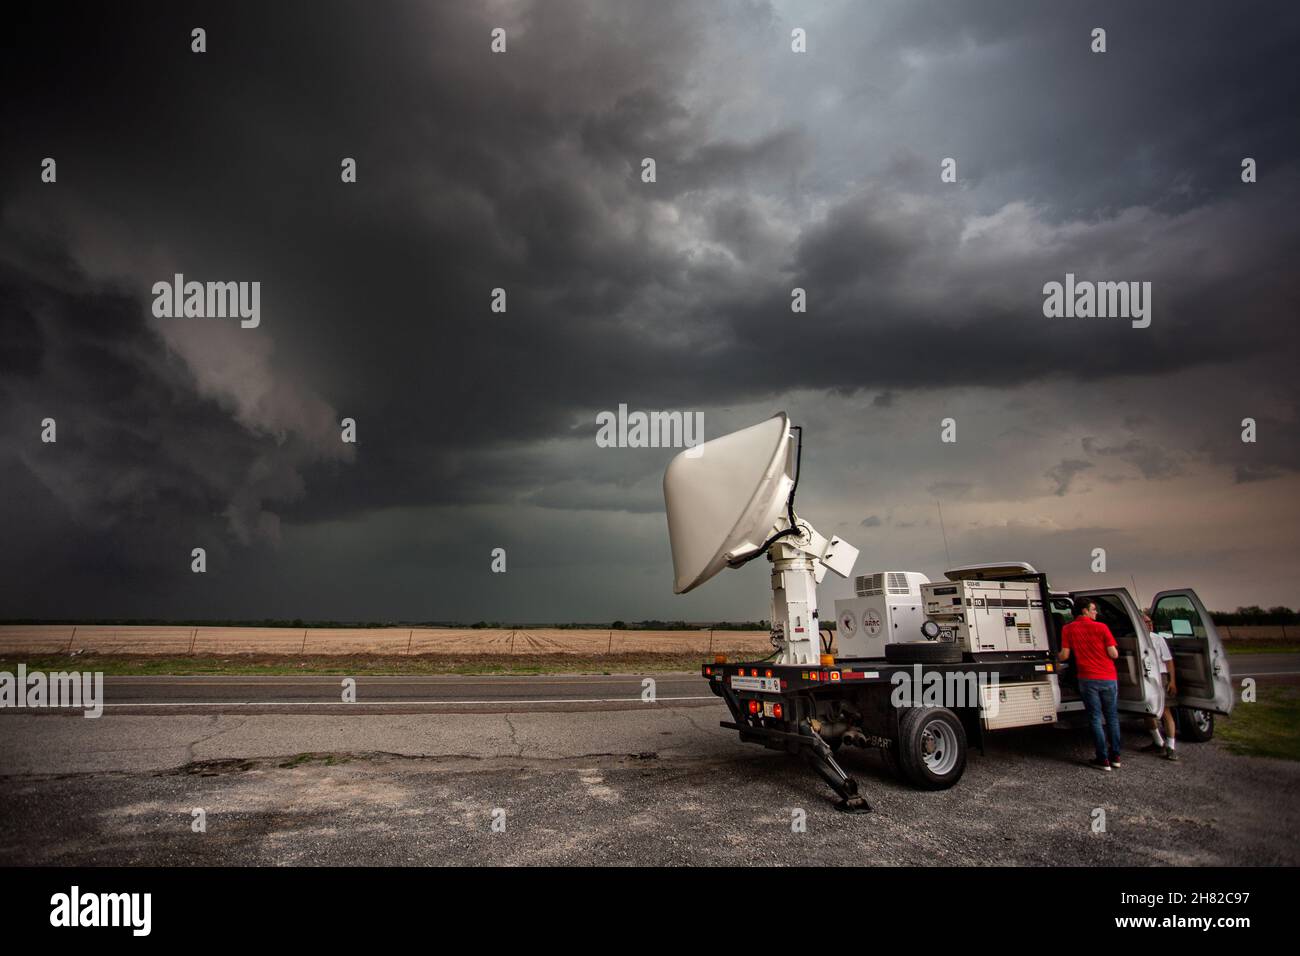 Des chercheurs de l'Université de l'Oklahoma examinent une tempête de supercellules avec une unité radar mobile près de Mountain View, Oklahoma, le 2 mai 2018. Banque D'Images